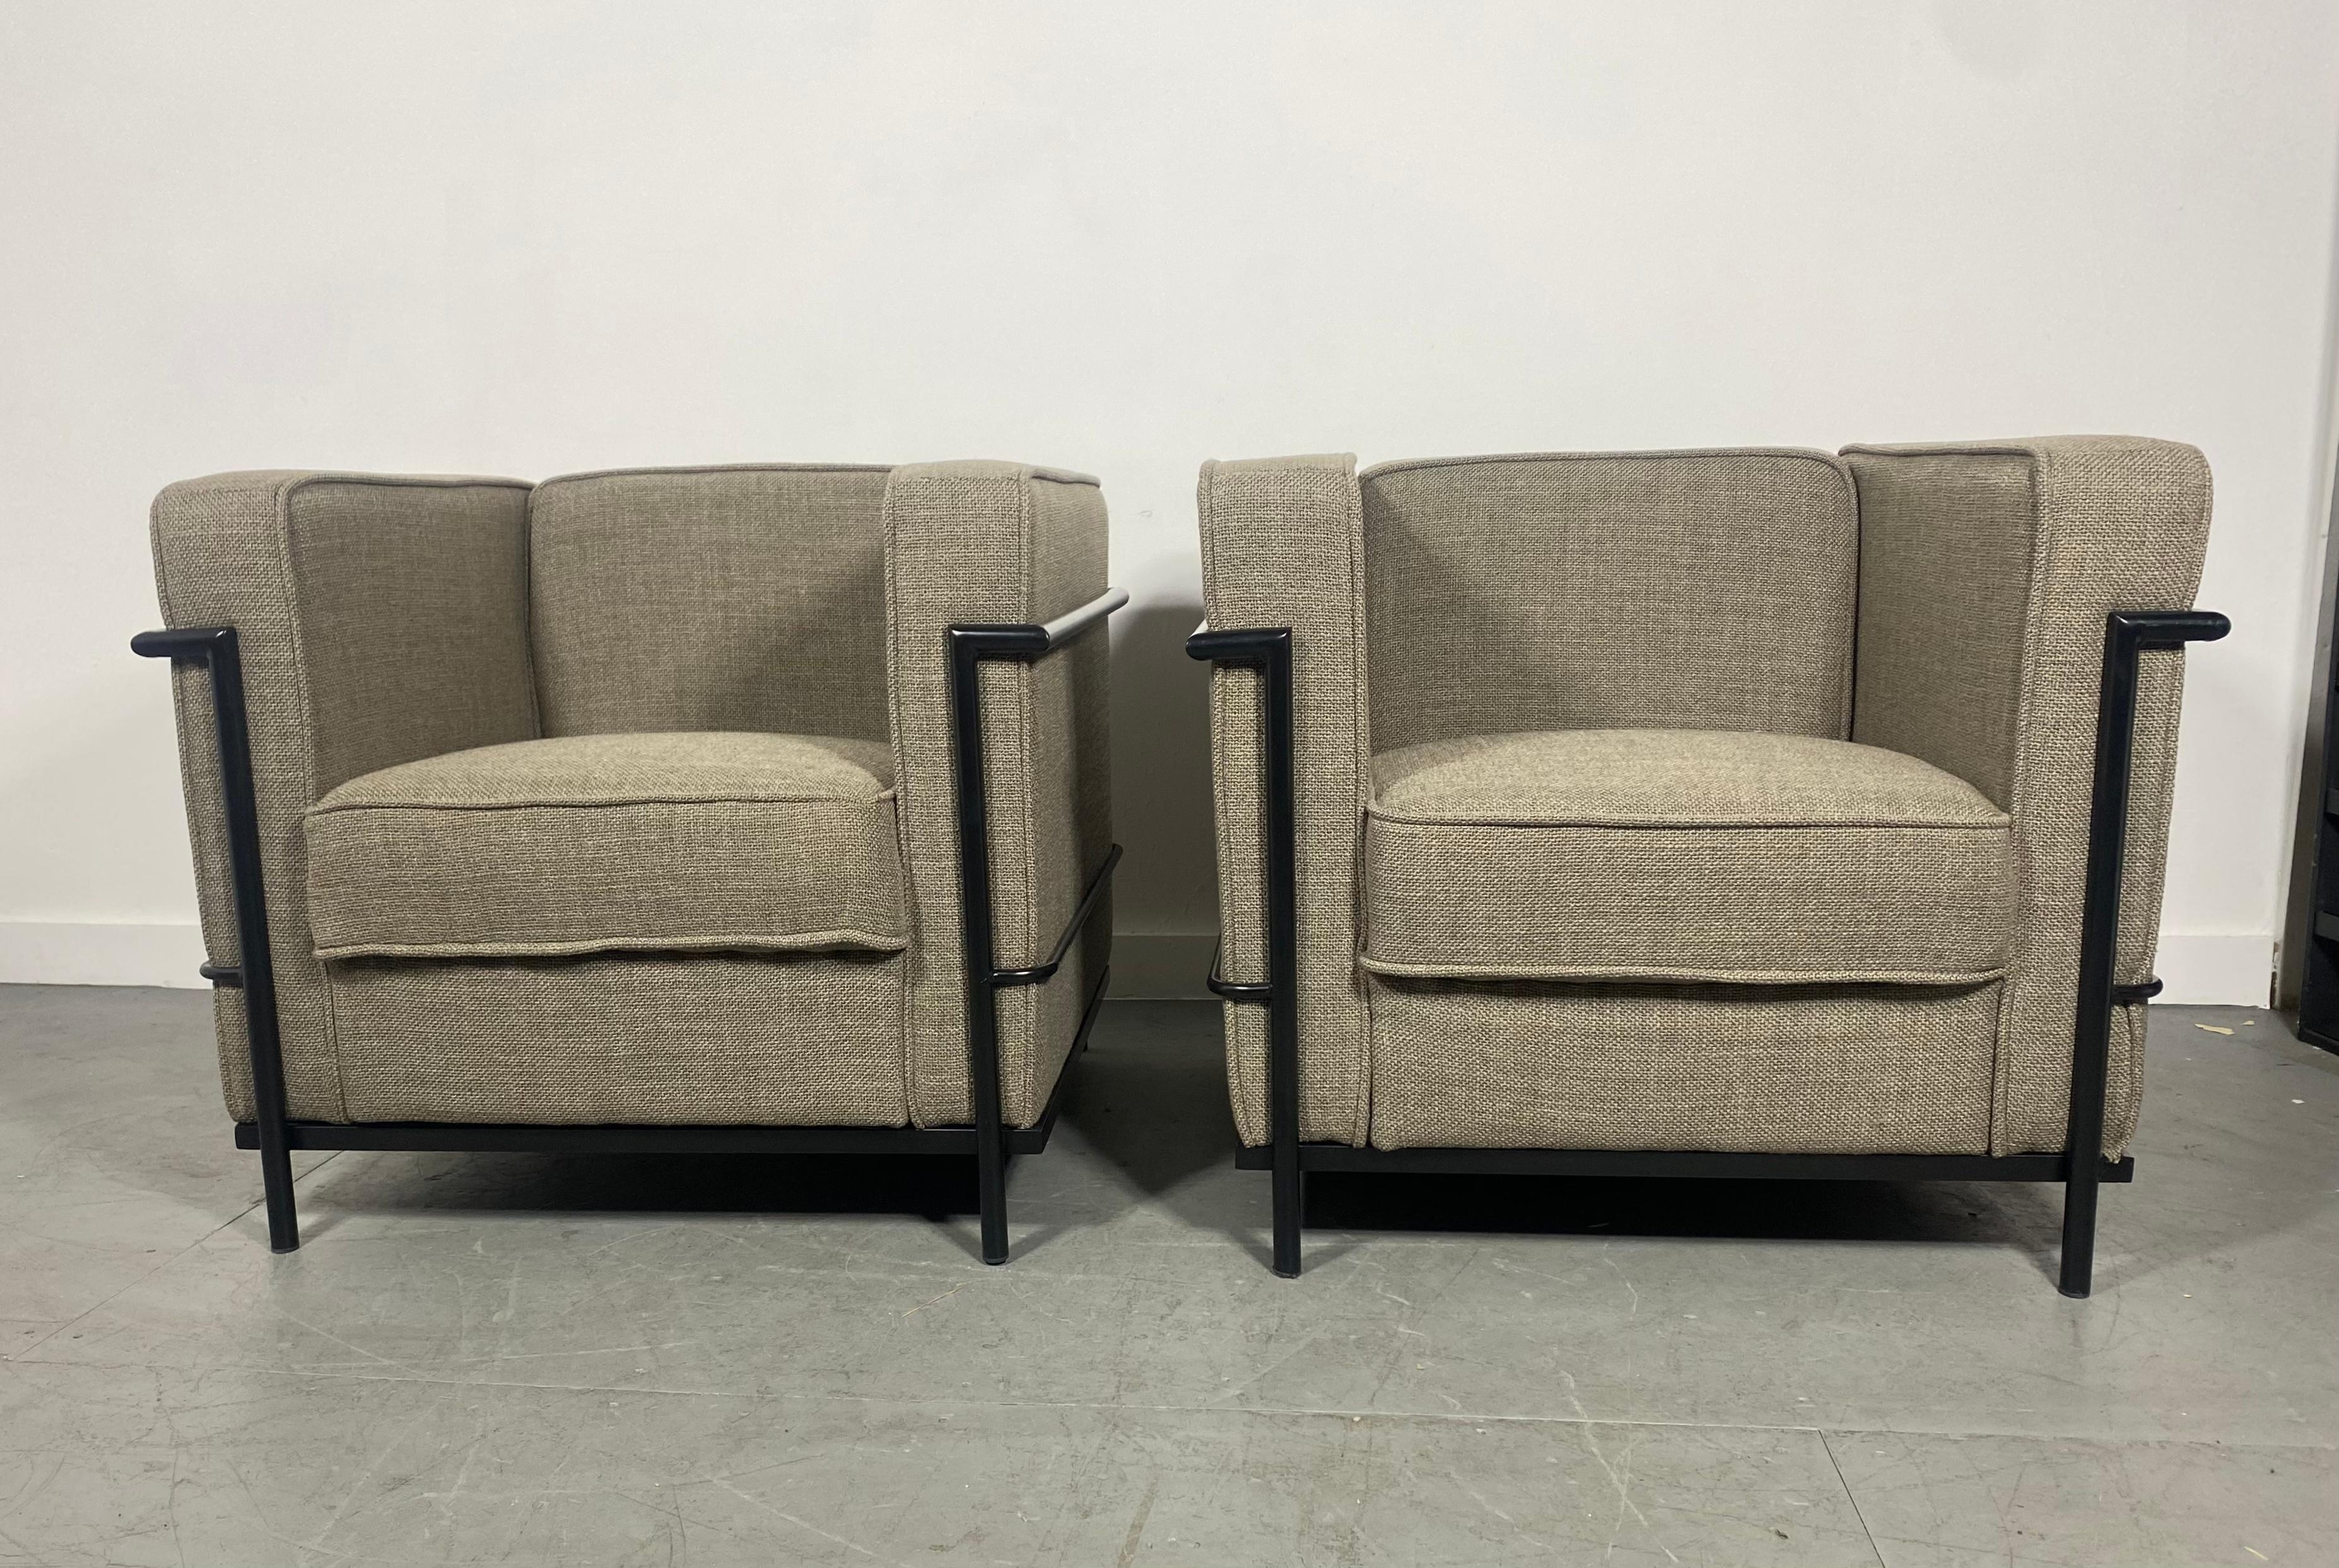 Paar LC-2 Lounge-Stühle im Bauhaus-Stil. Klassisches Design von Le Corbusier. Hersteller unbekannt. Schöner Originalzustand. Schwarz pulverbeschichtete Rahmen aus Qualitätsgewebe. Persönliche Zustellung in New York City oder überall auf dem Weg von